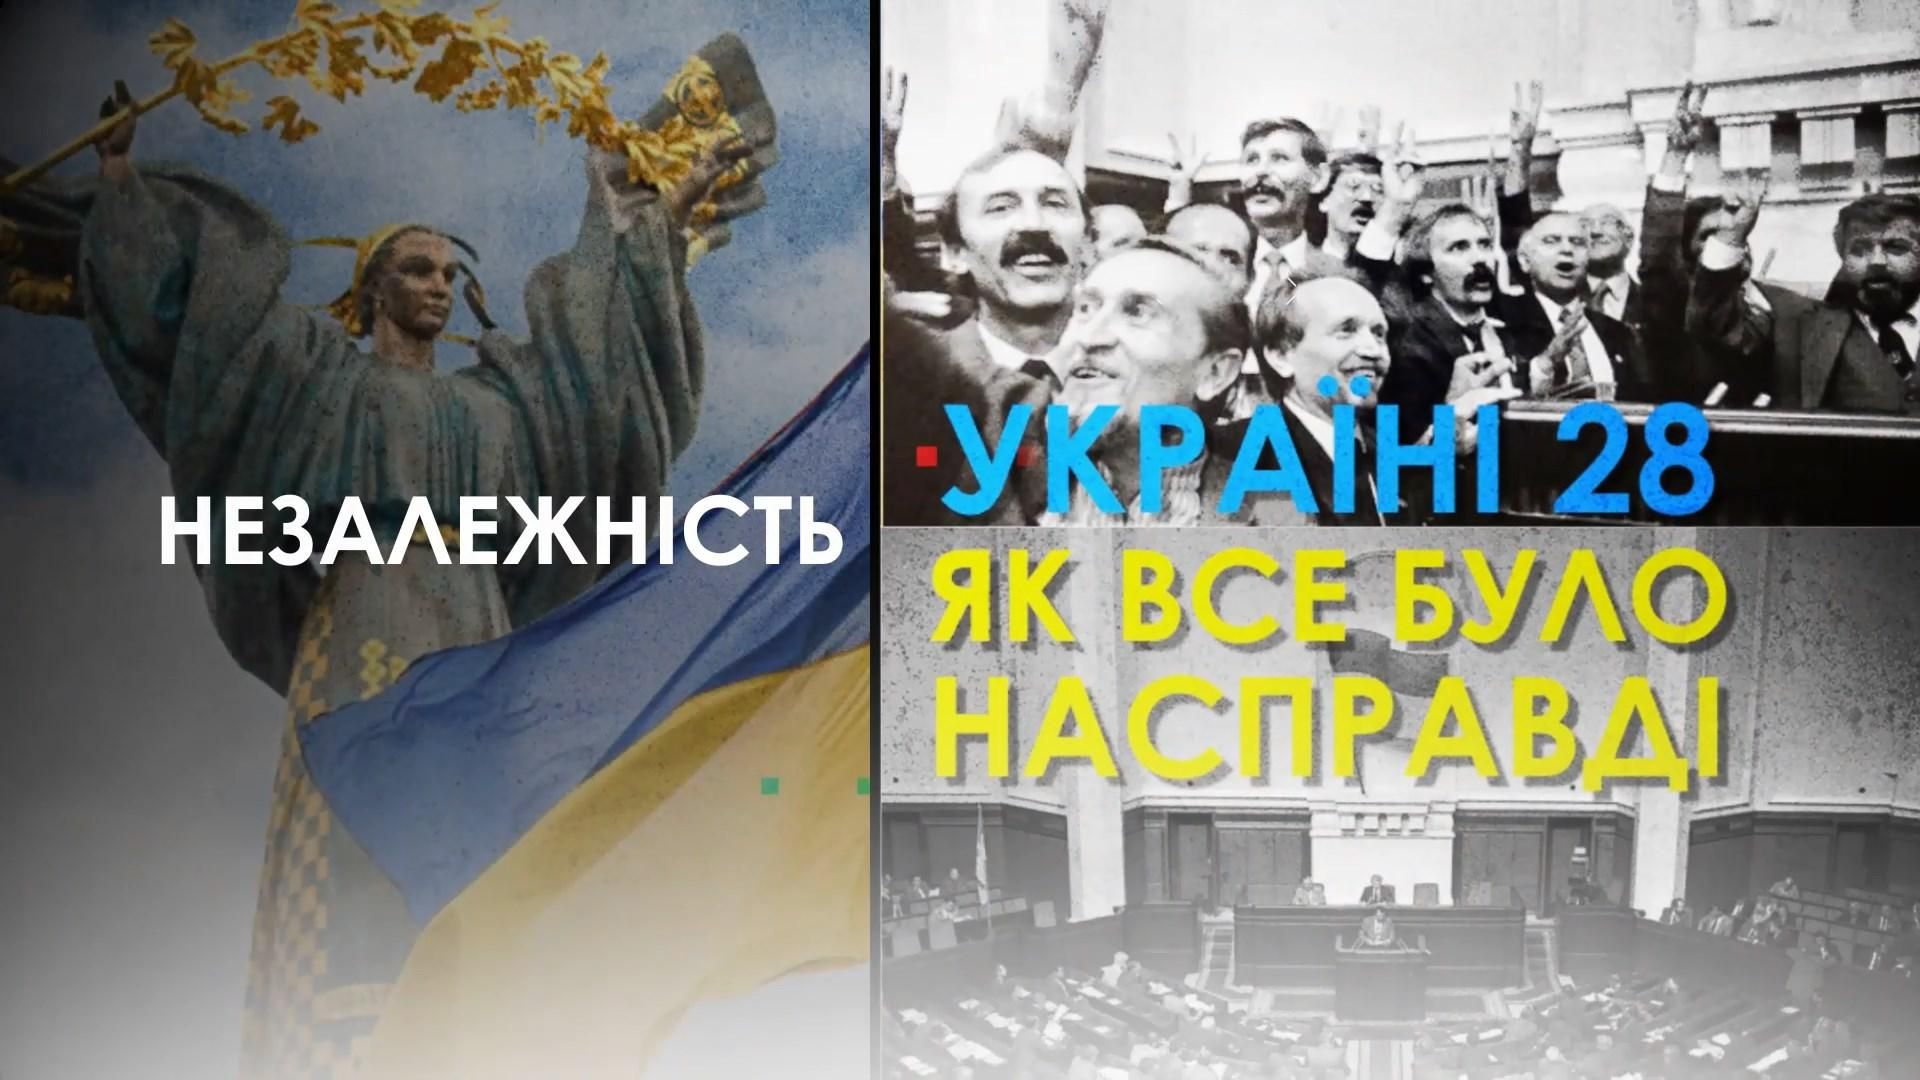 КГБ, коммунисты и первые политические шаги: как Украина шла к Независимости